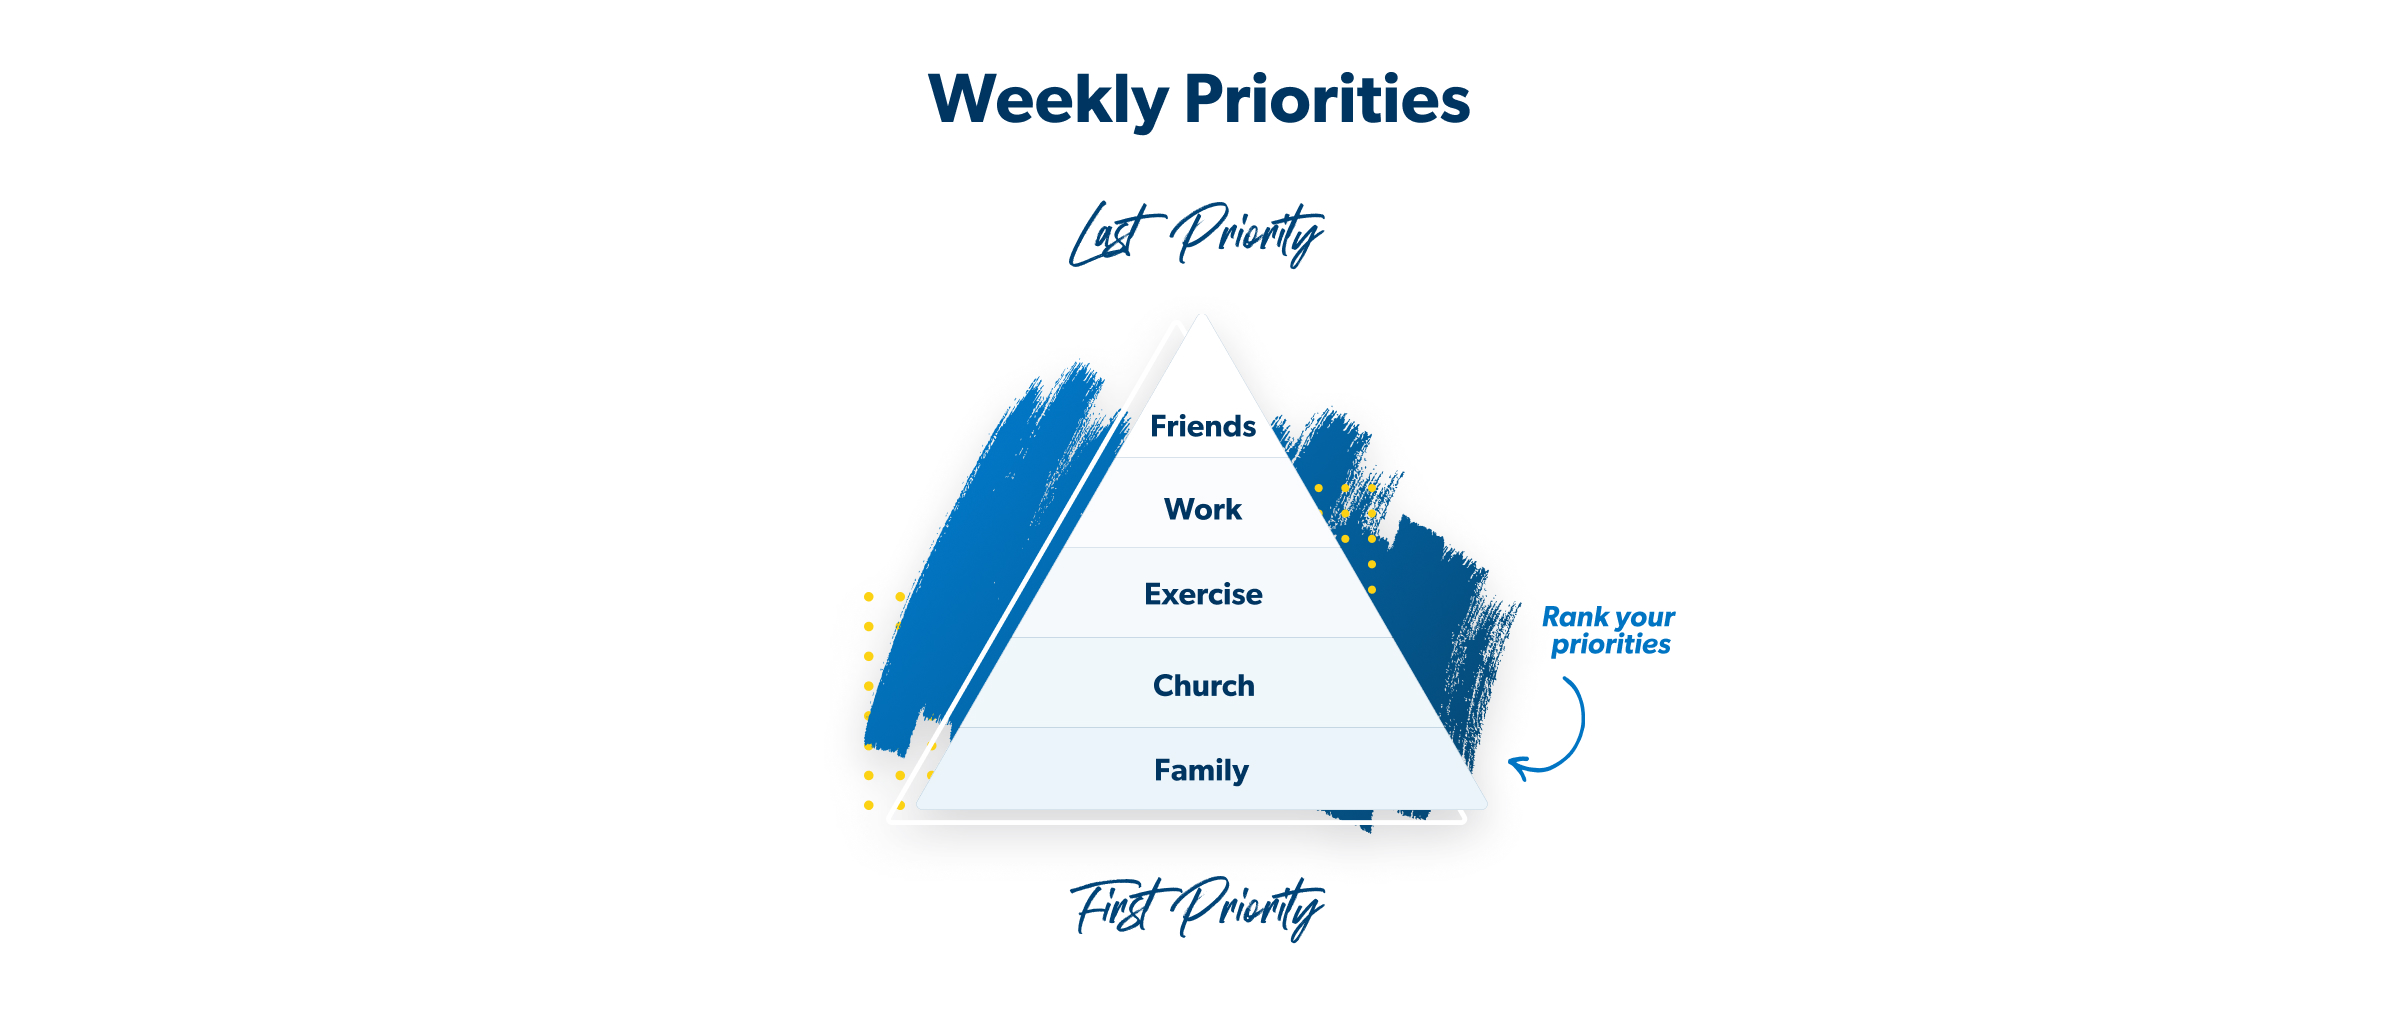 rank your priorities 